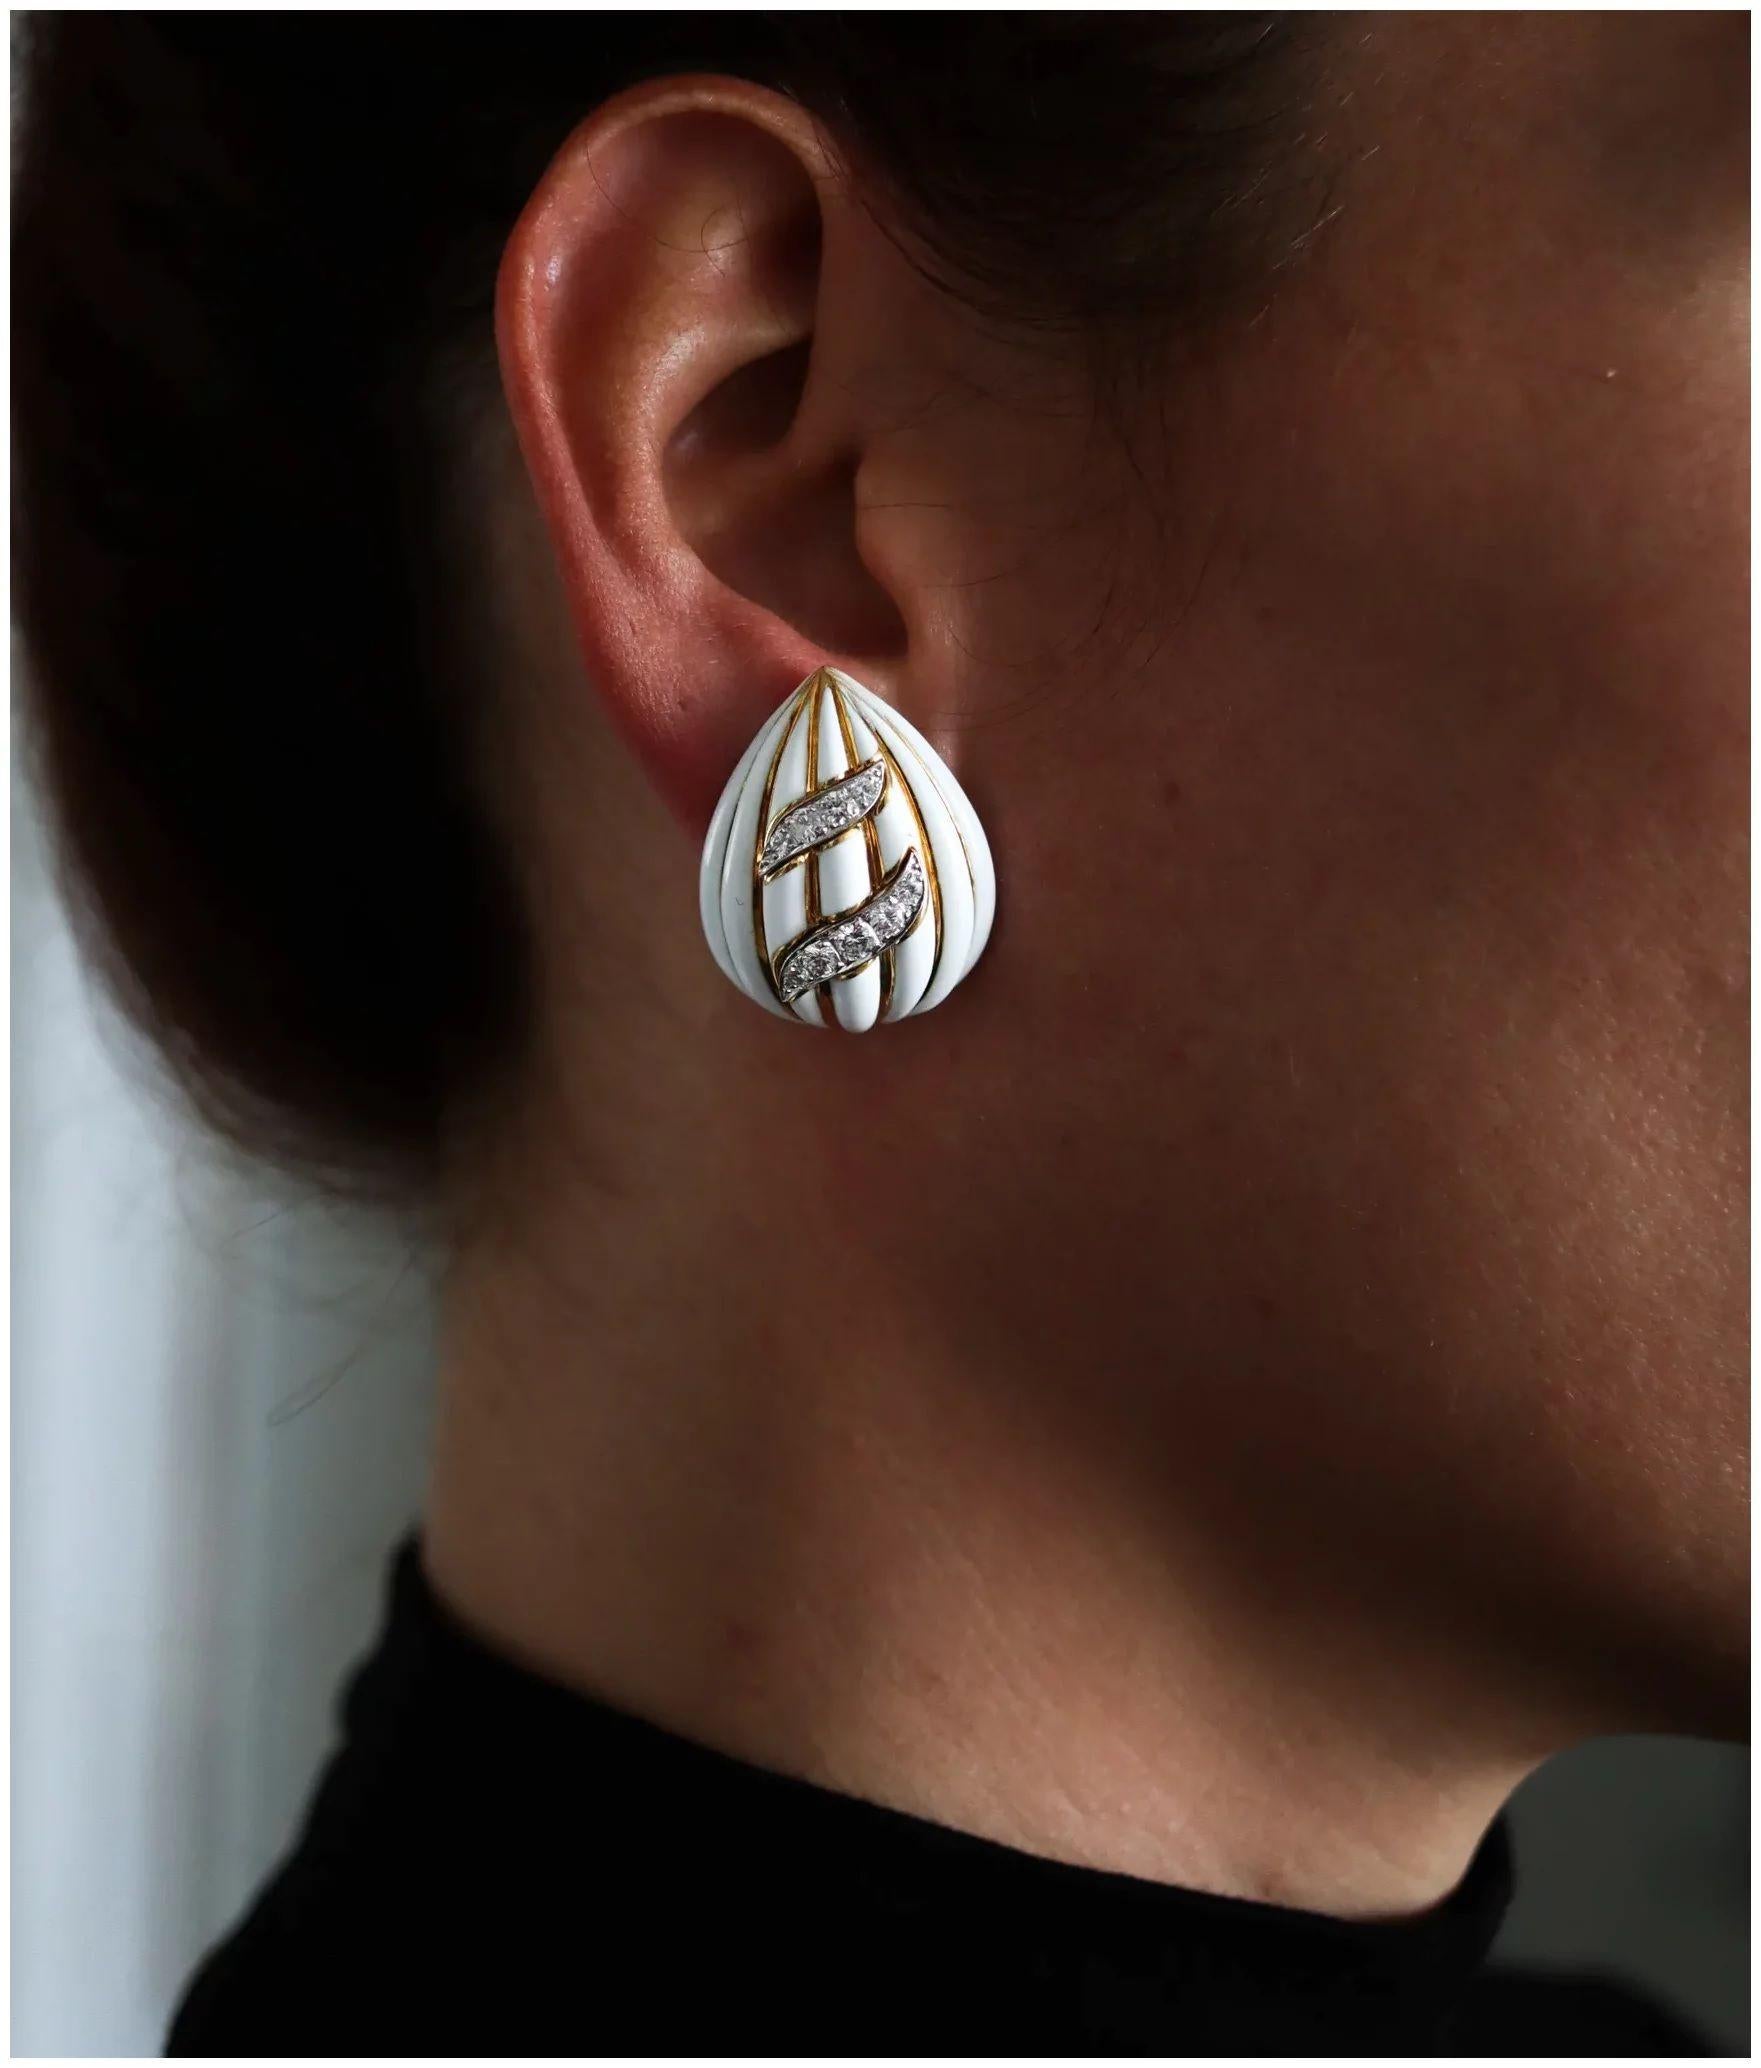 Boucles d'oreilles en amandes cannelées créées par David Webb (1925-1975).
Belle paire classique américaine, créée à New York dans l'atelier de joaillerie de David Webb pendant la période moderniste, dans les années 1970. Ces boucles d'oreilles